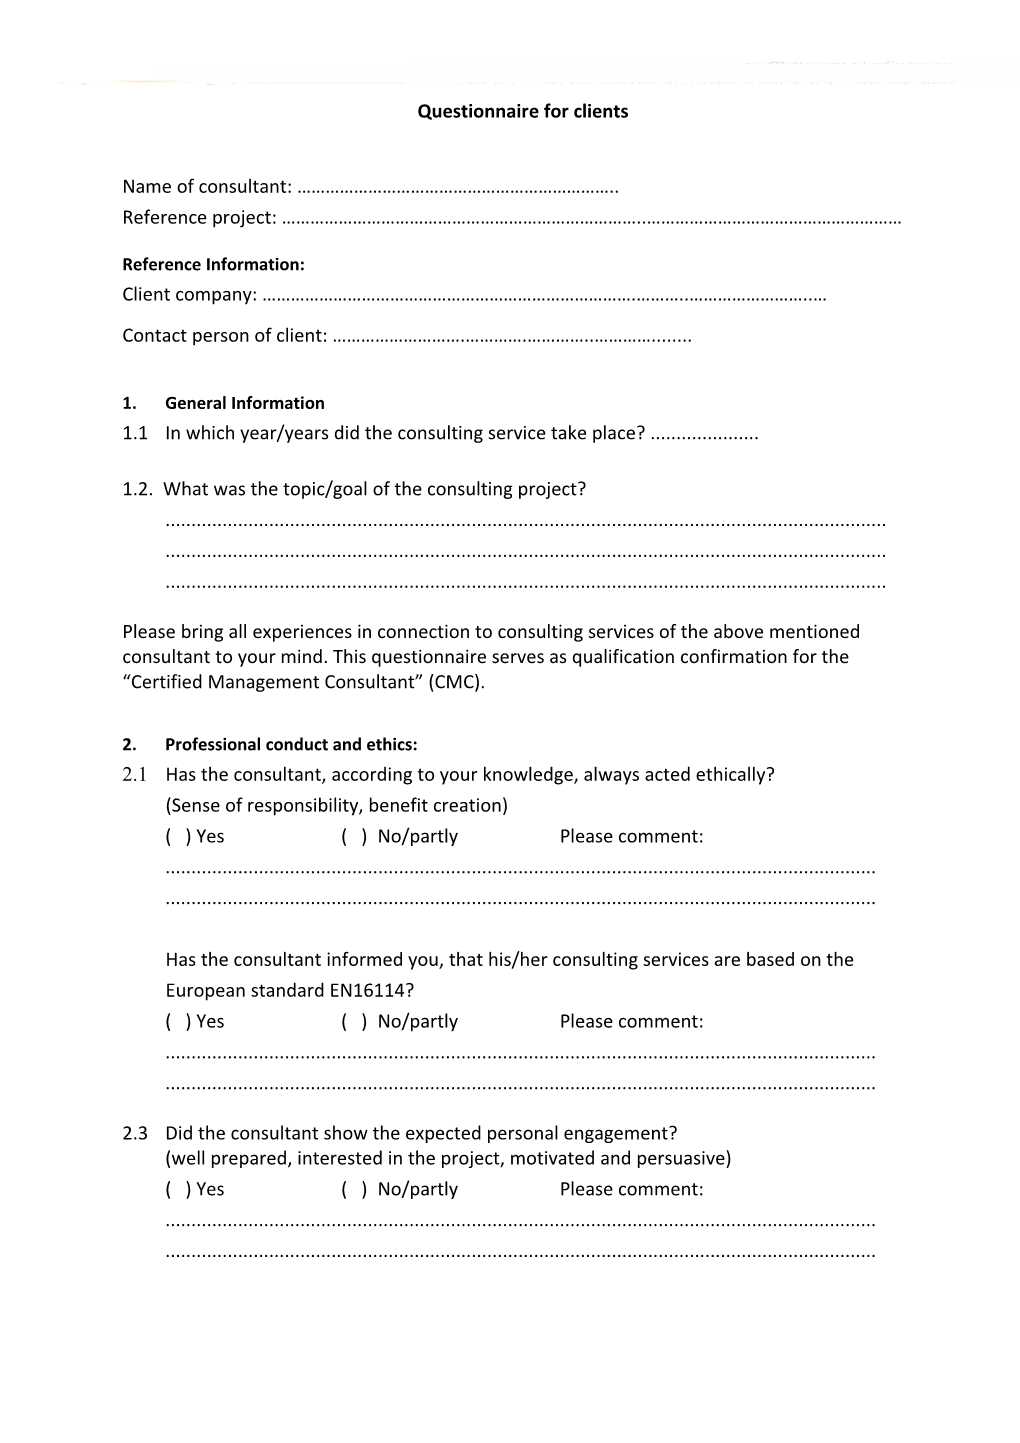 Questionnaire for Clients